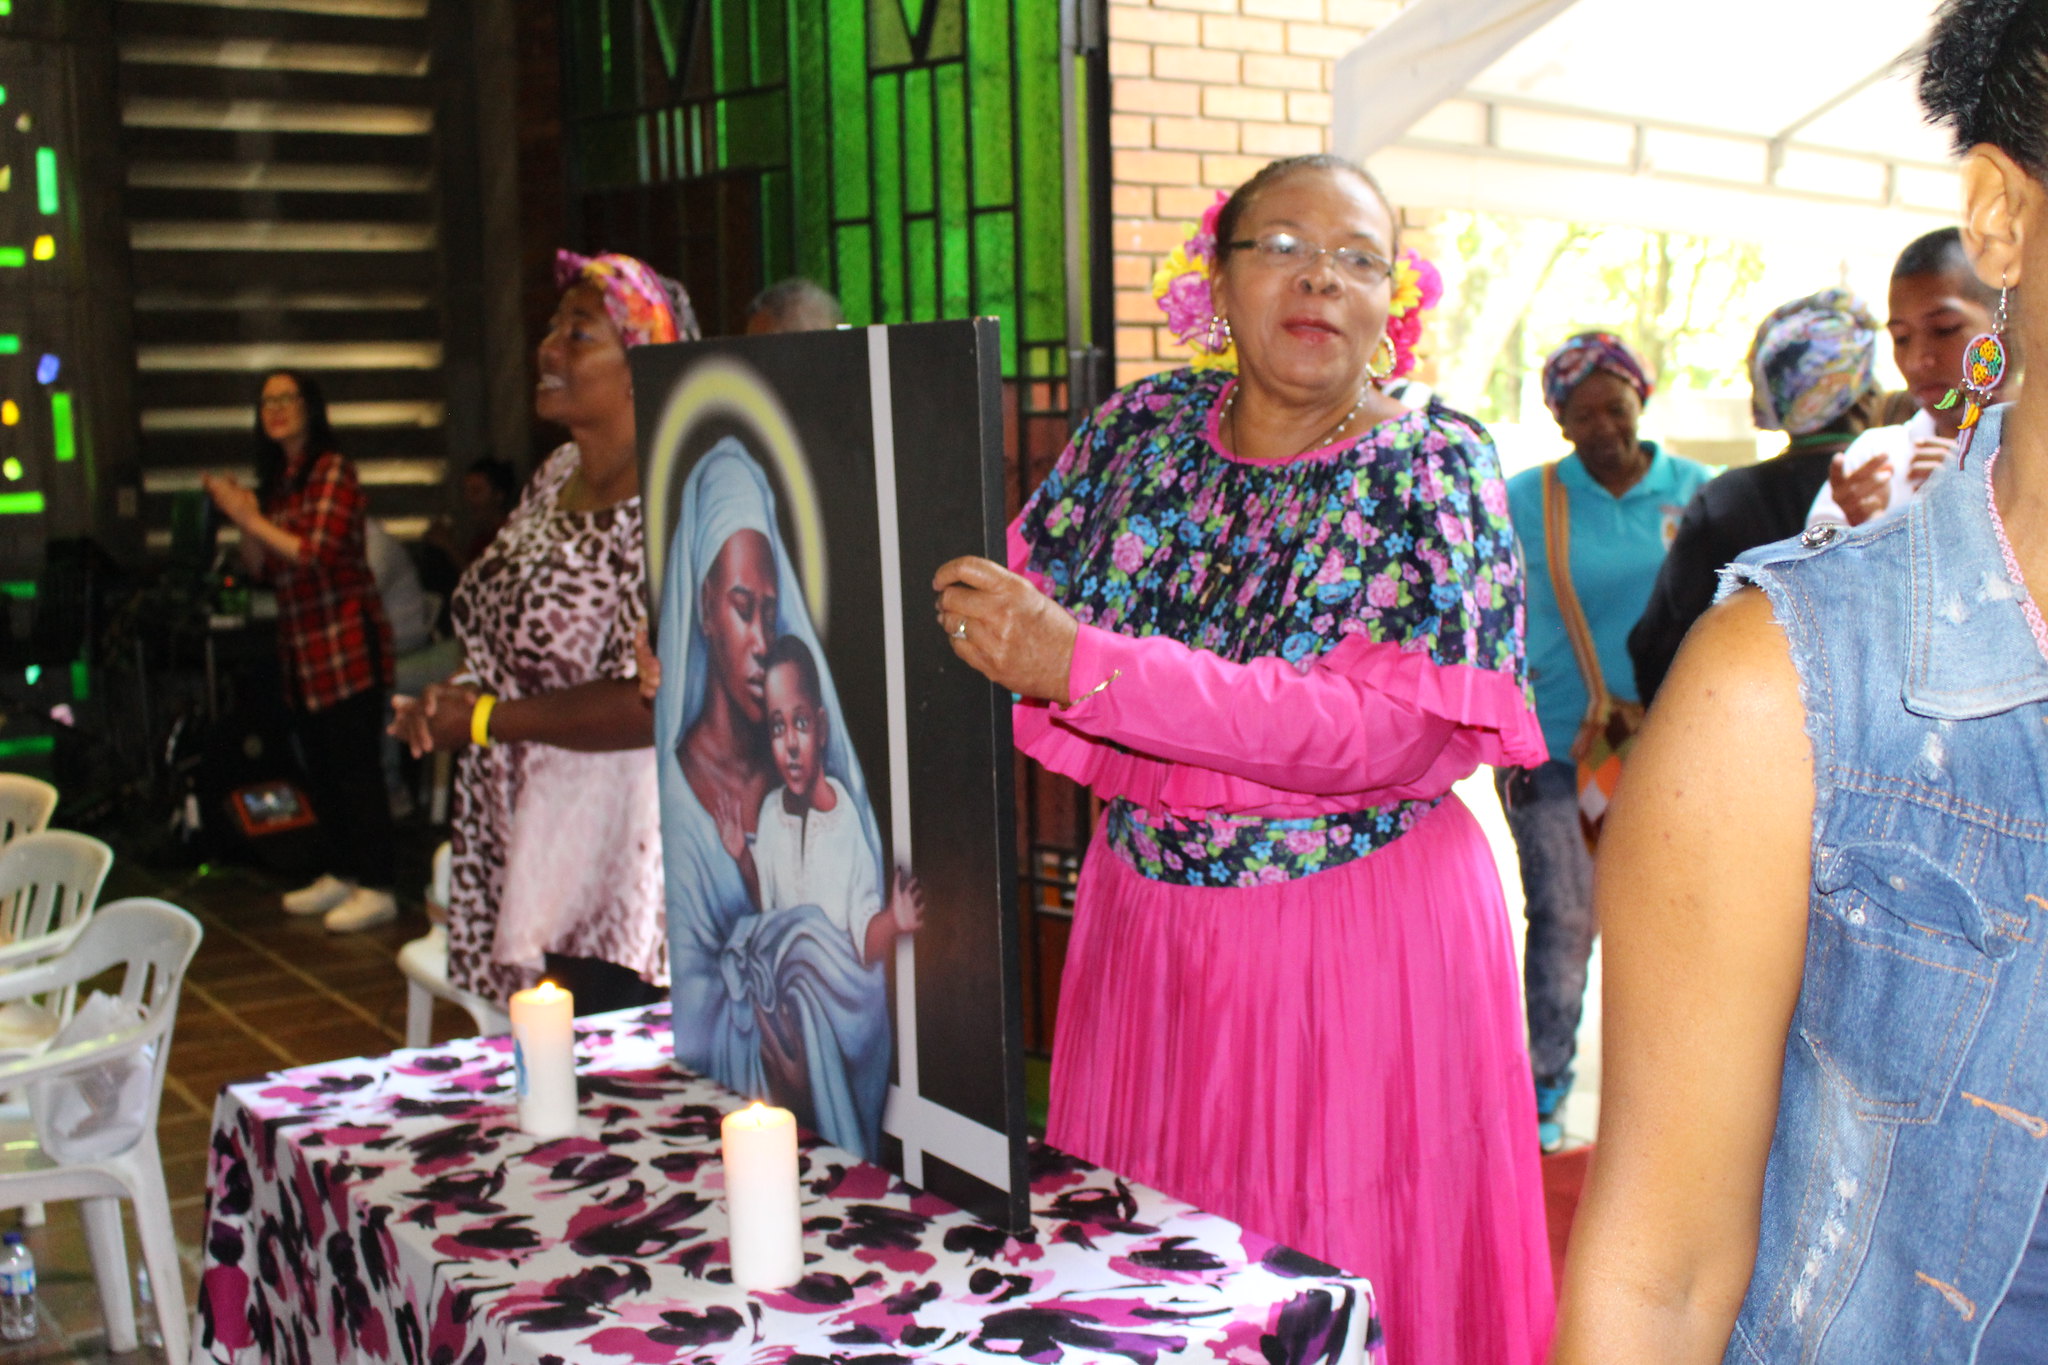 La delegación de Panamá animó los cantos de la Eucaristía del día en la capilla de la USB y aprovechó para promover la Jornada Mundial de la Juventud 2019. Una de sus representantes sostiene el cuadro de María mafa, símbolo de la Pastoral Afro Cali.